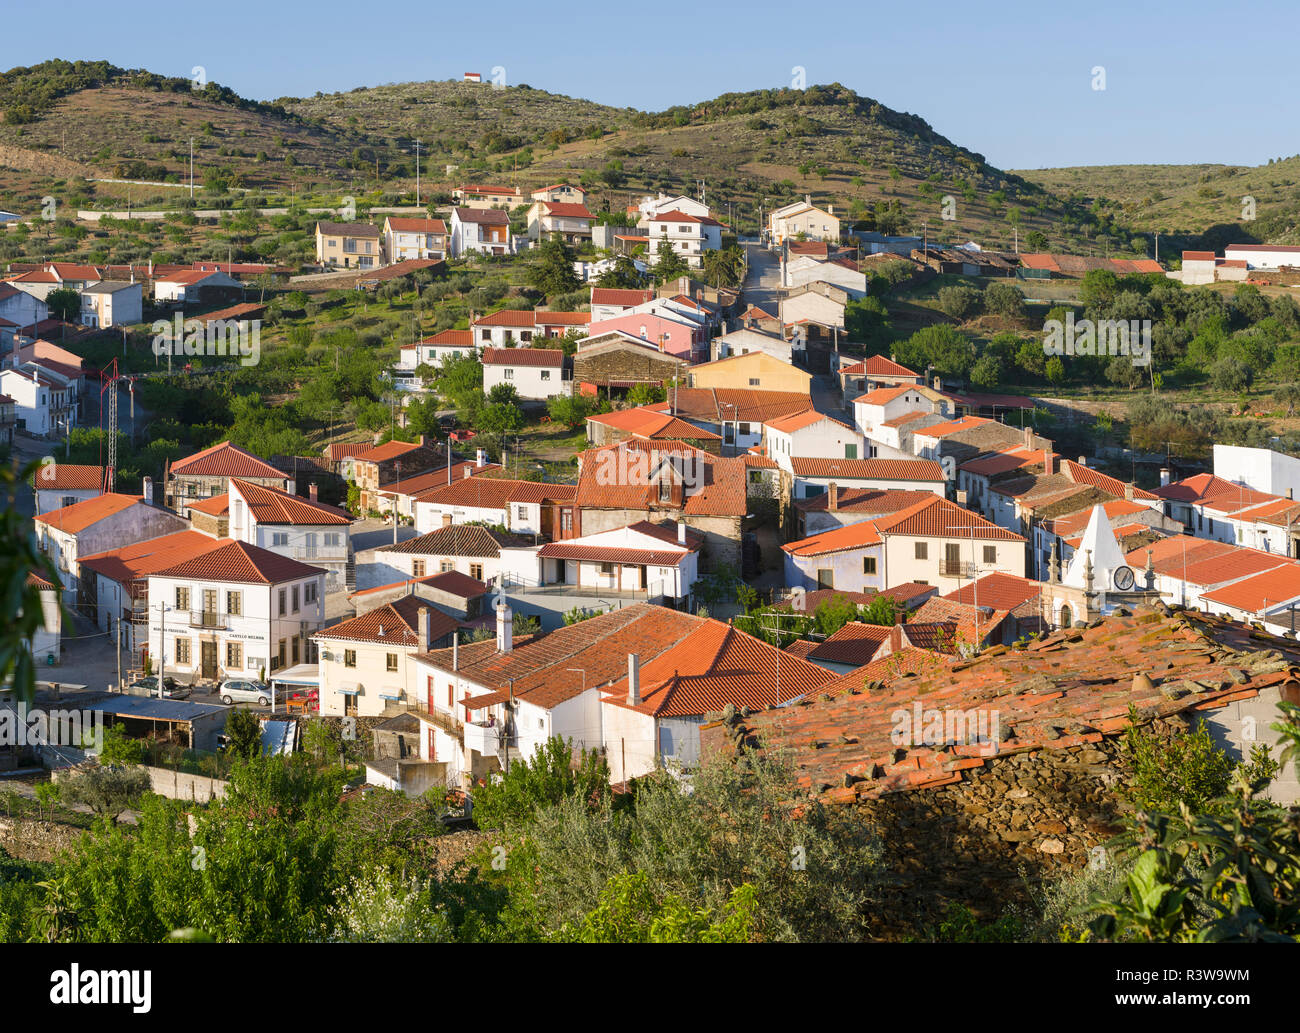 Castelo Melhor vicino a Vila Nova de Foz Coa. È la zona viticola Alto Douro ed elencato come patrimonio mondiale dell'UNESCO. Portogallo Foto Stock